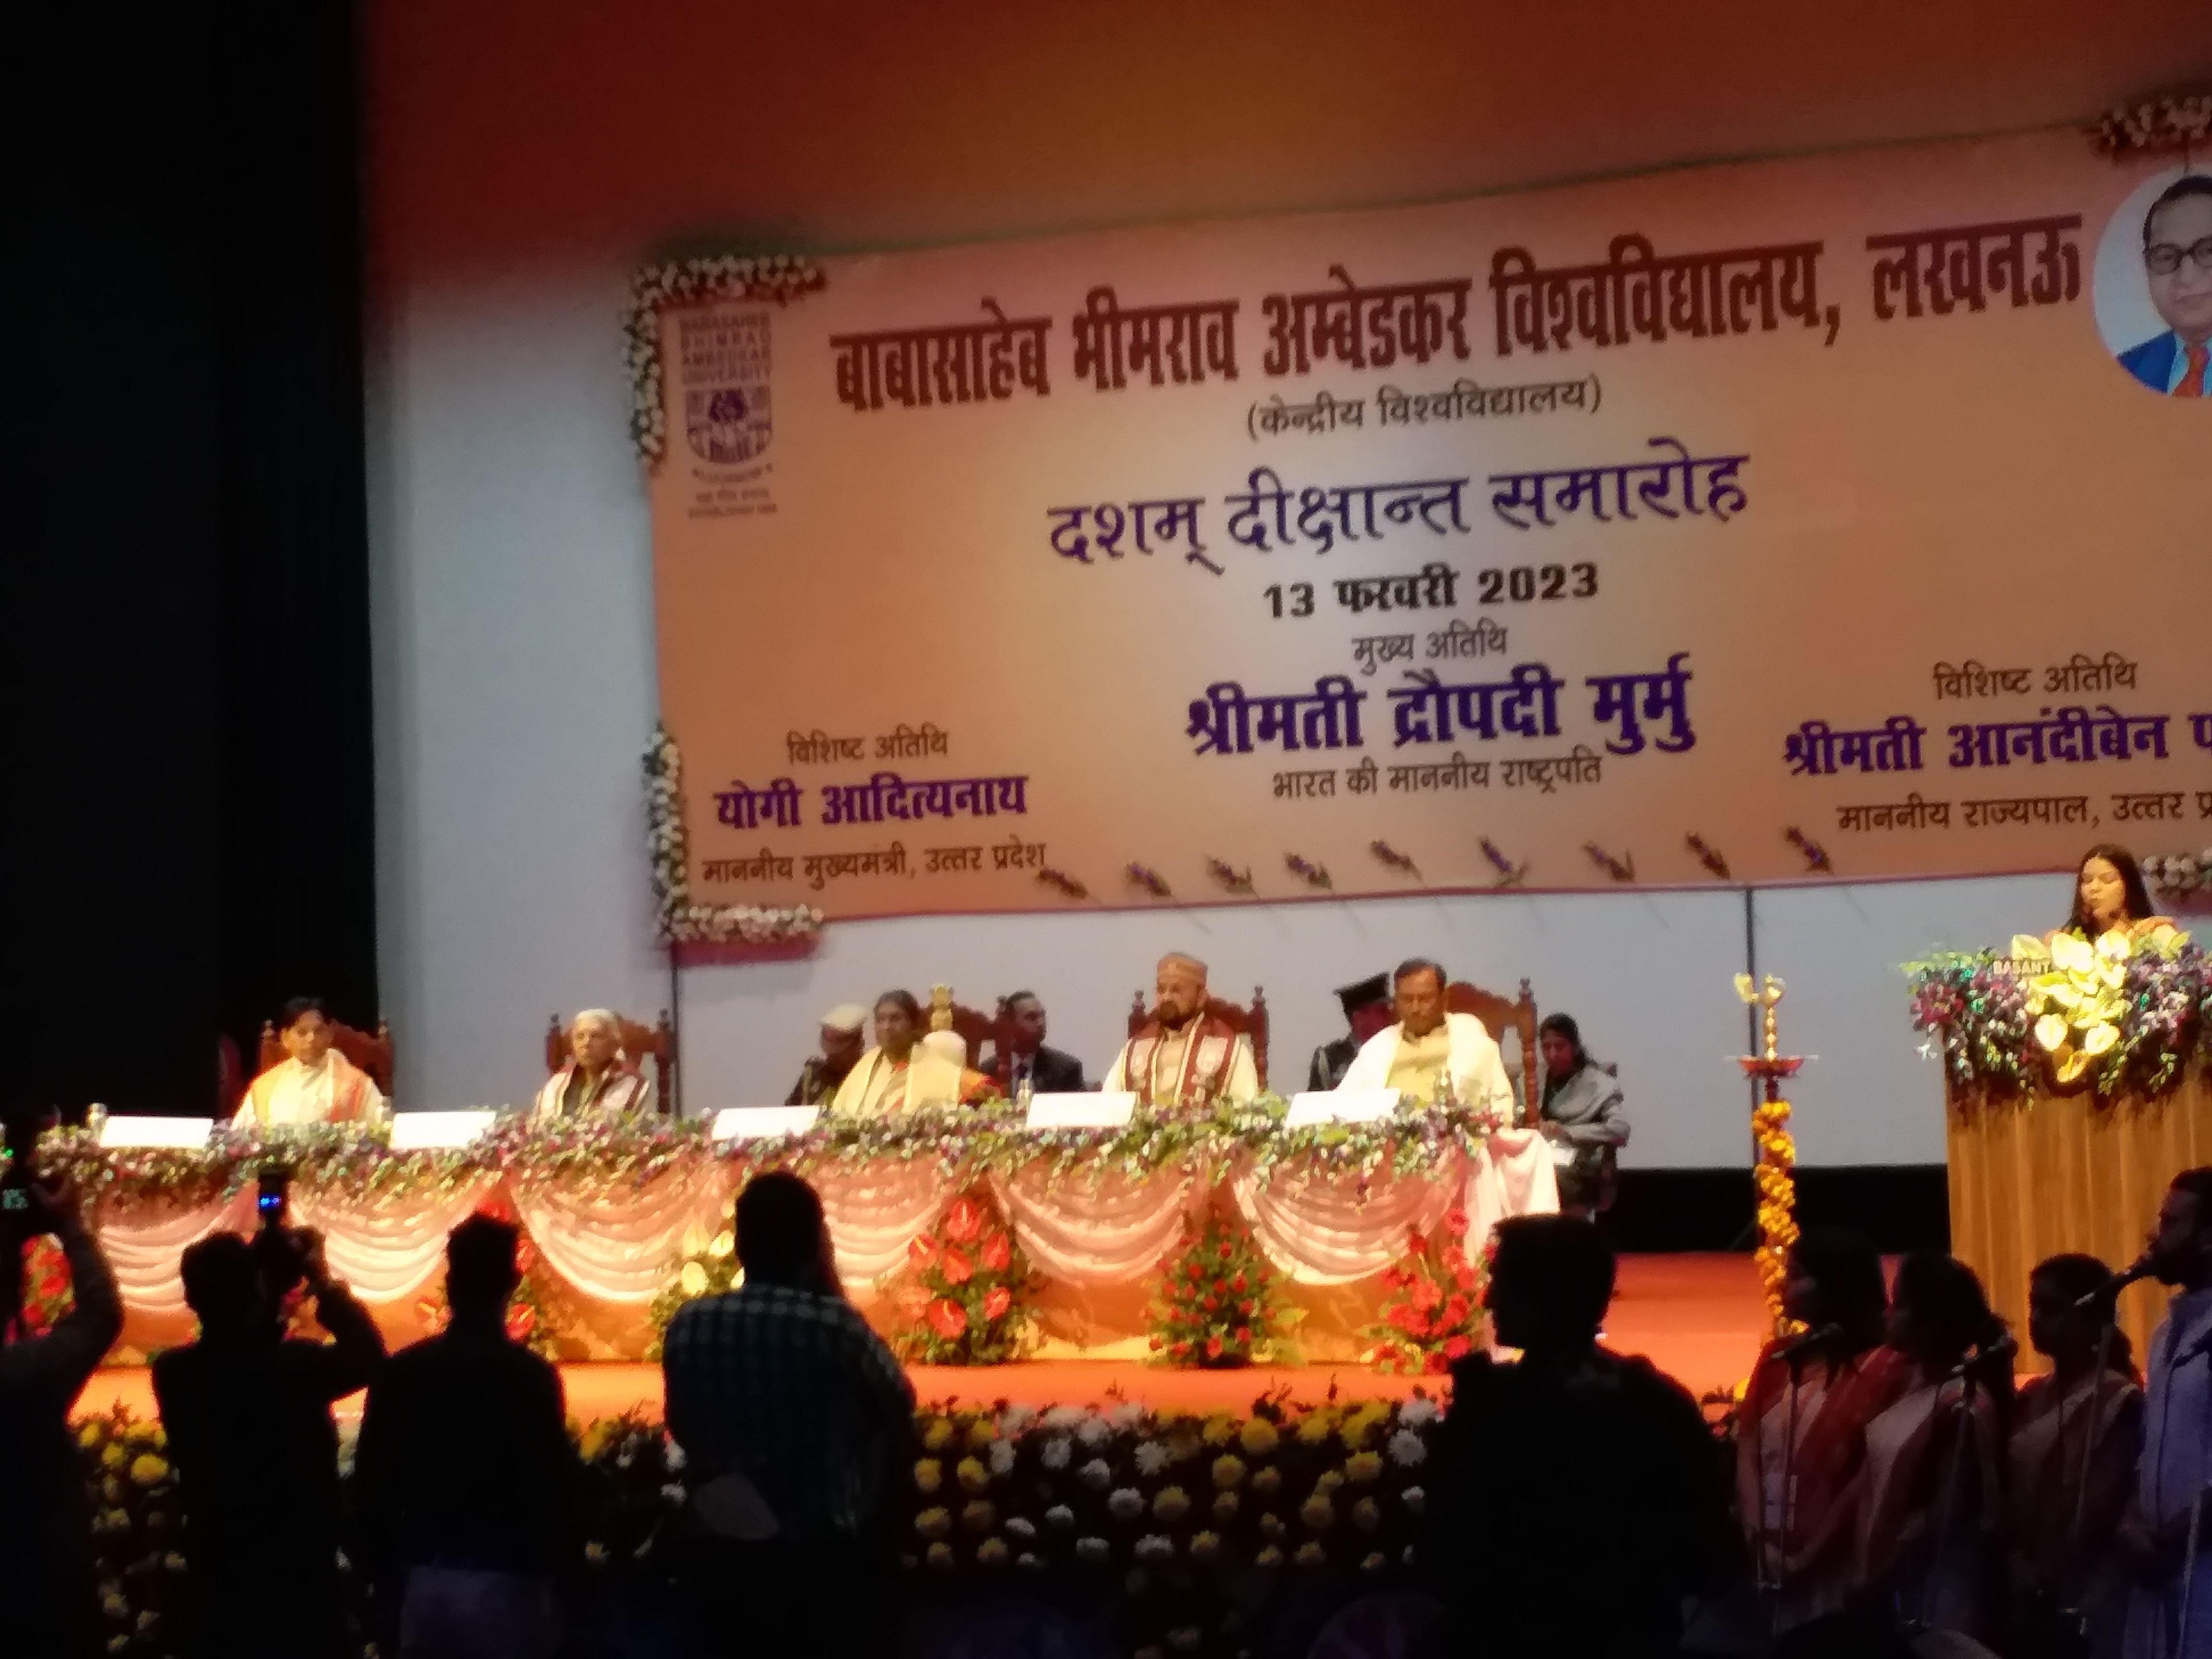 Droupadi Murmu in Lucknow: बीबीएयू का दीक्षांत समारोह शुरू, राष्ट्रपति समारोह में उपस्थित